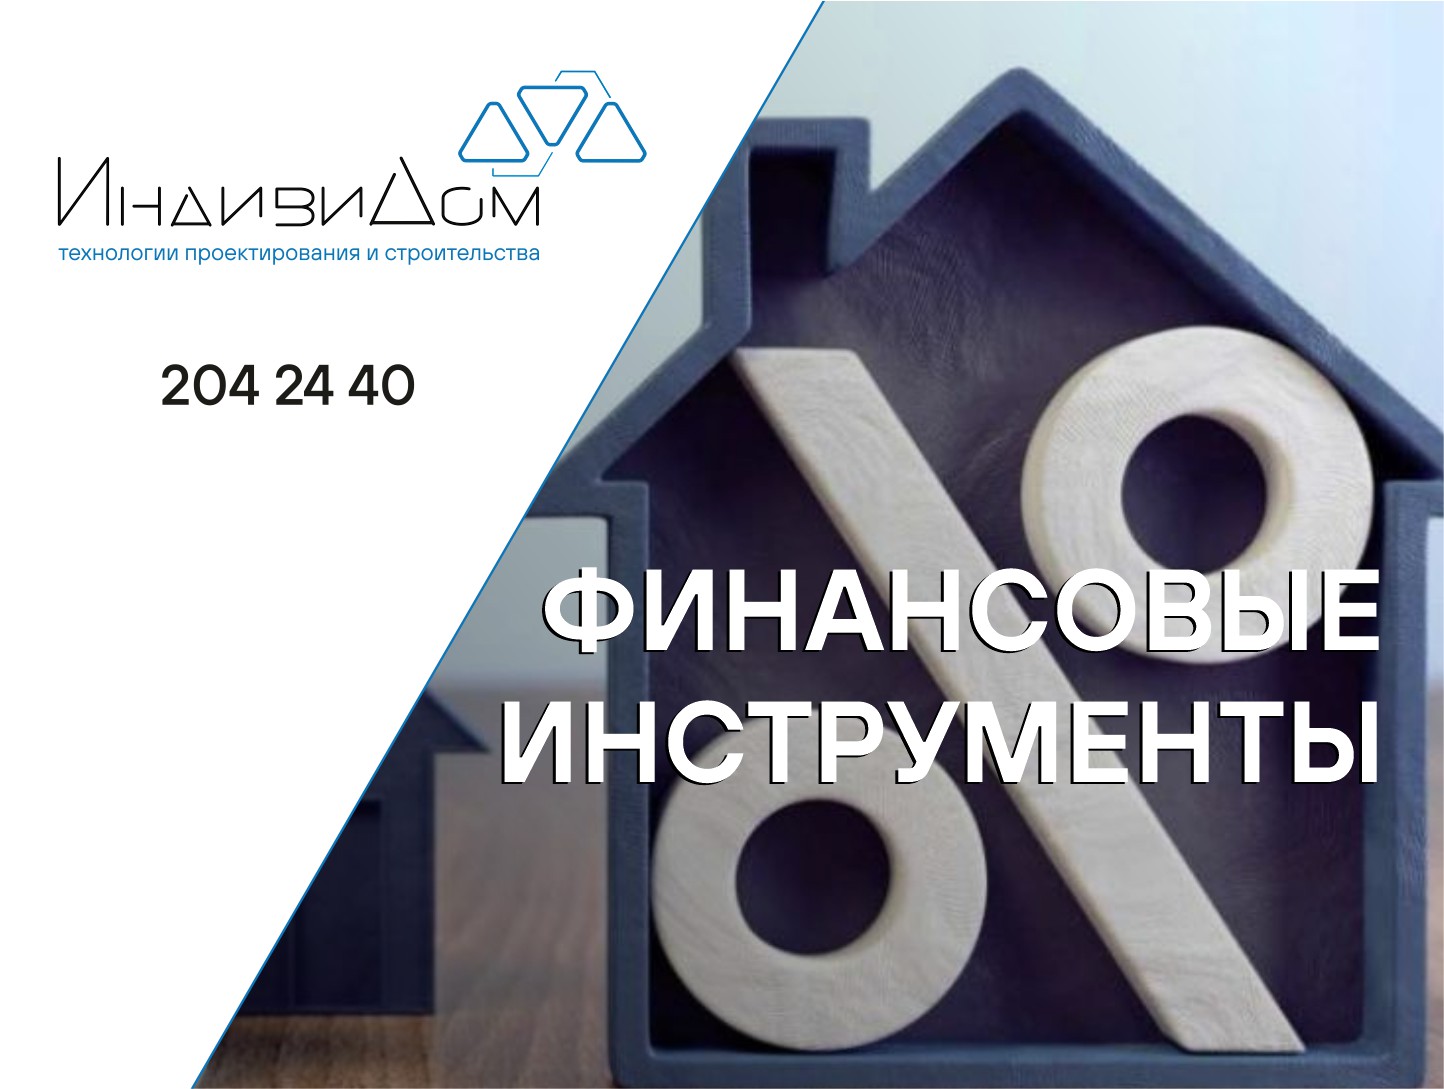 Как получить налоговый вычет на строительство дома, покупку земли за год| steklorez69.ru | НДФЛка